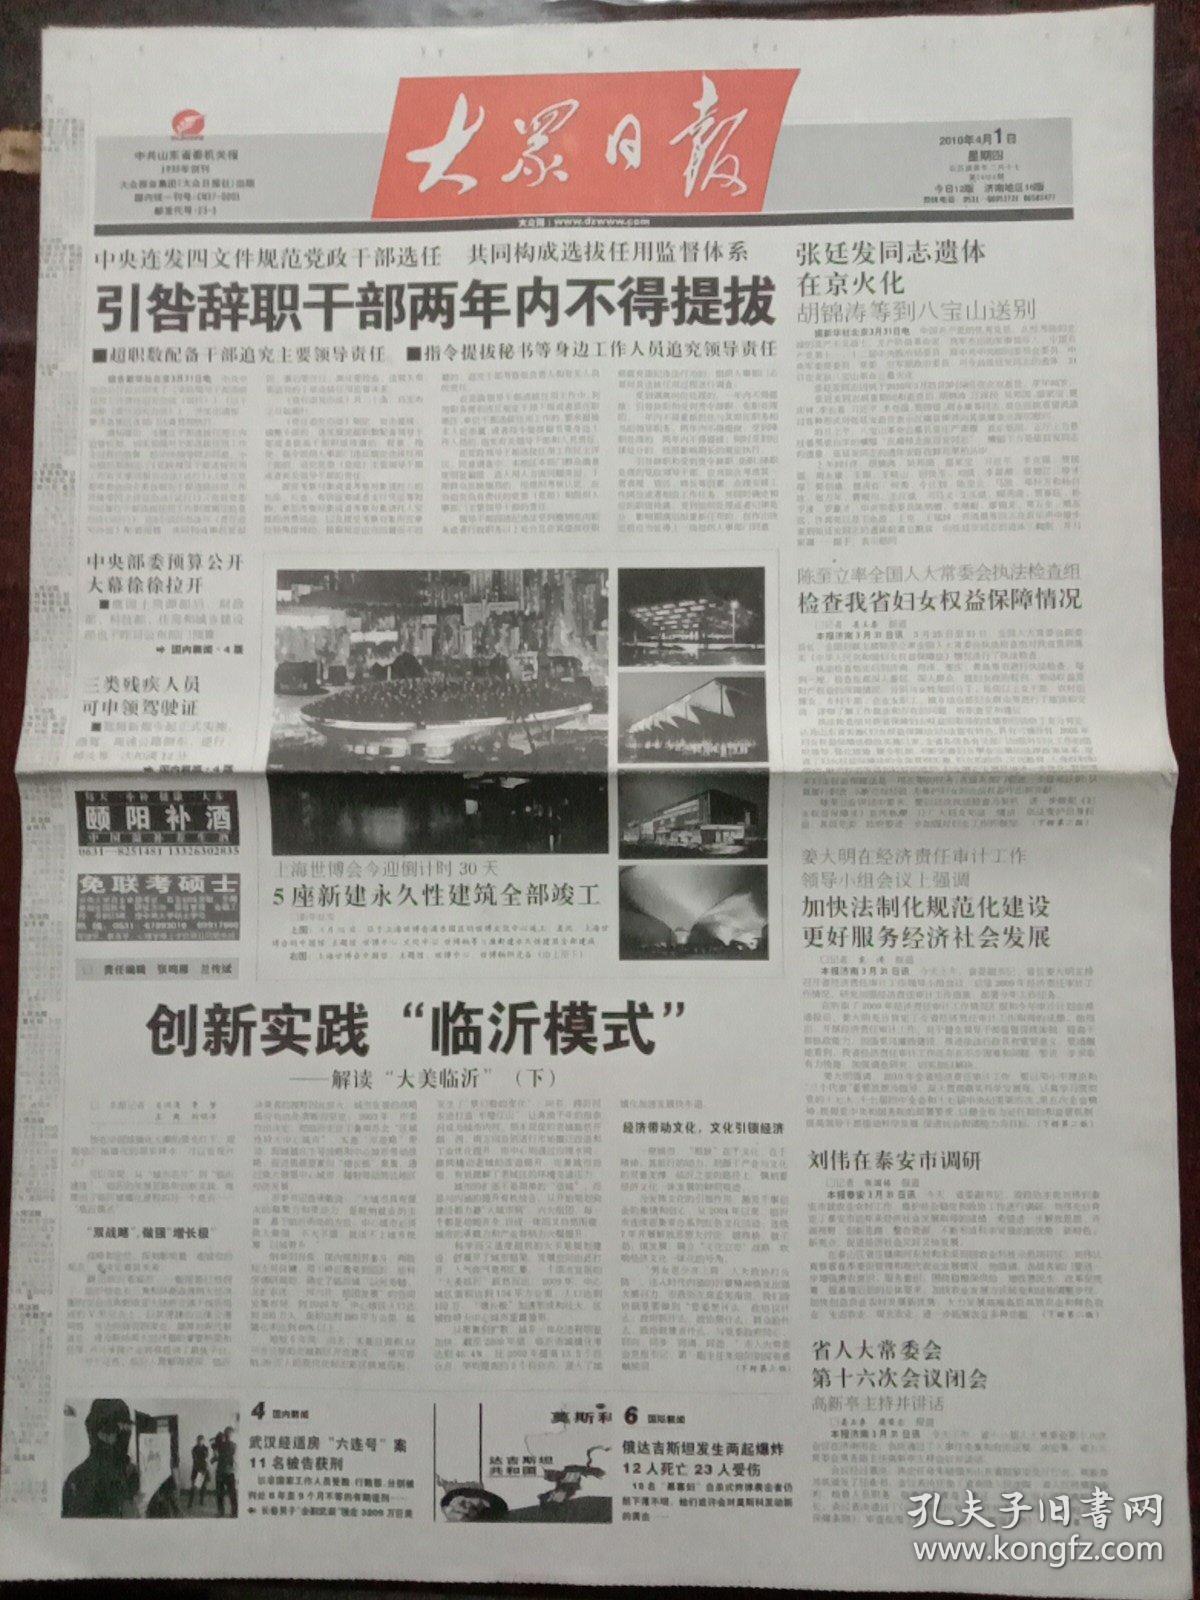 大众日报，2010年4月1日空军原司令员、1955年少将张廷发遗体火化，对开12版套红。